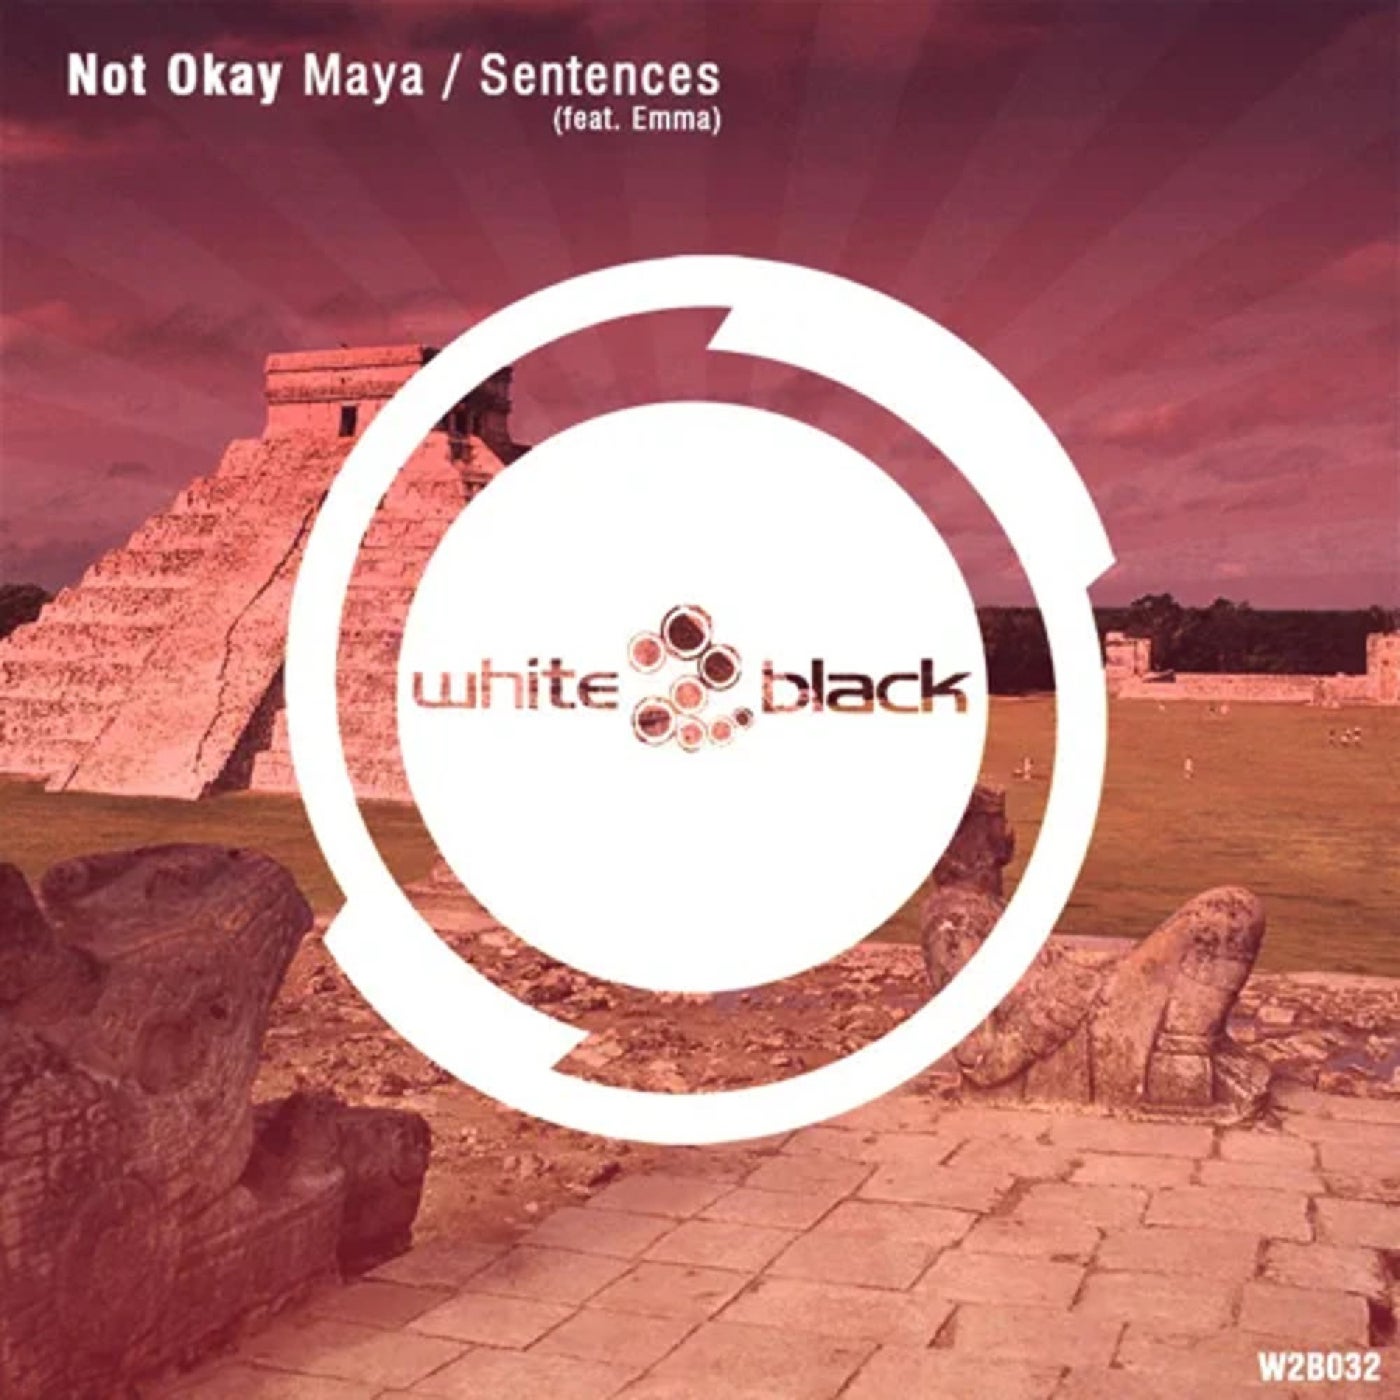 Not Okay - Maya / Sentences